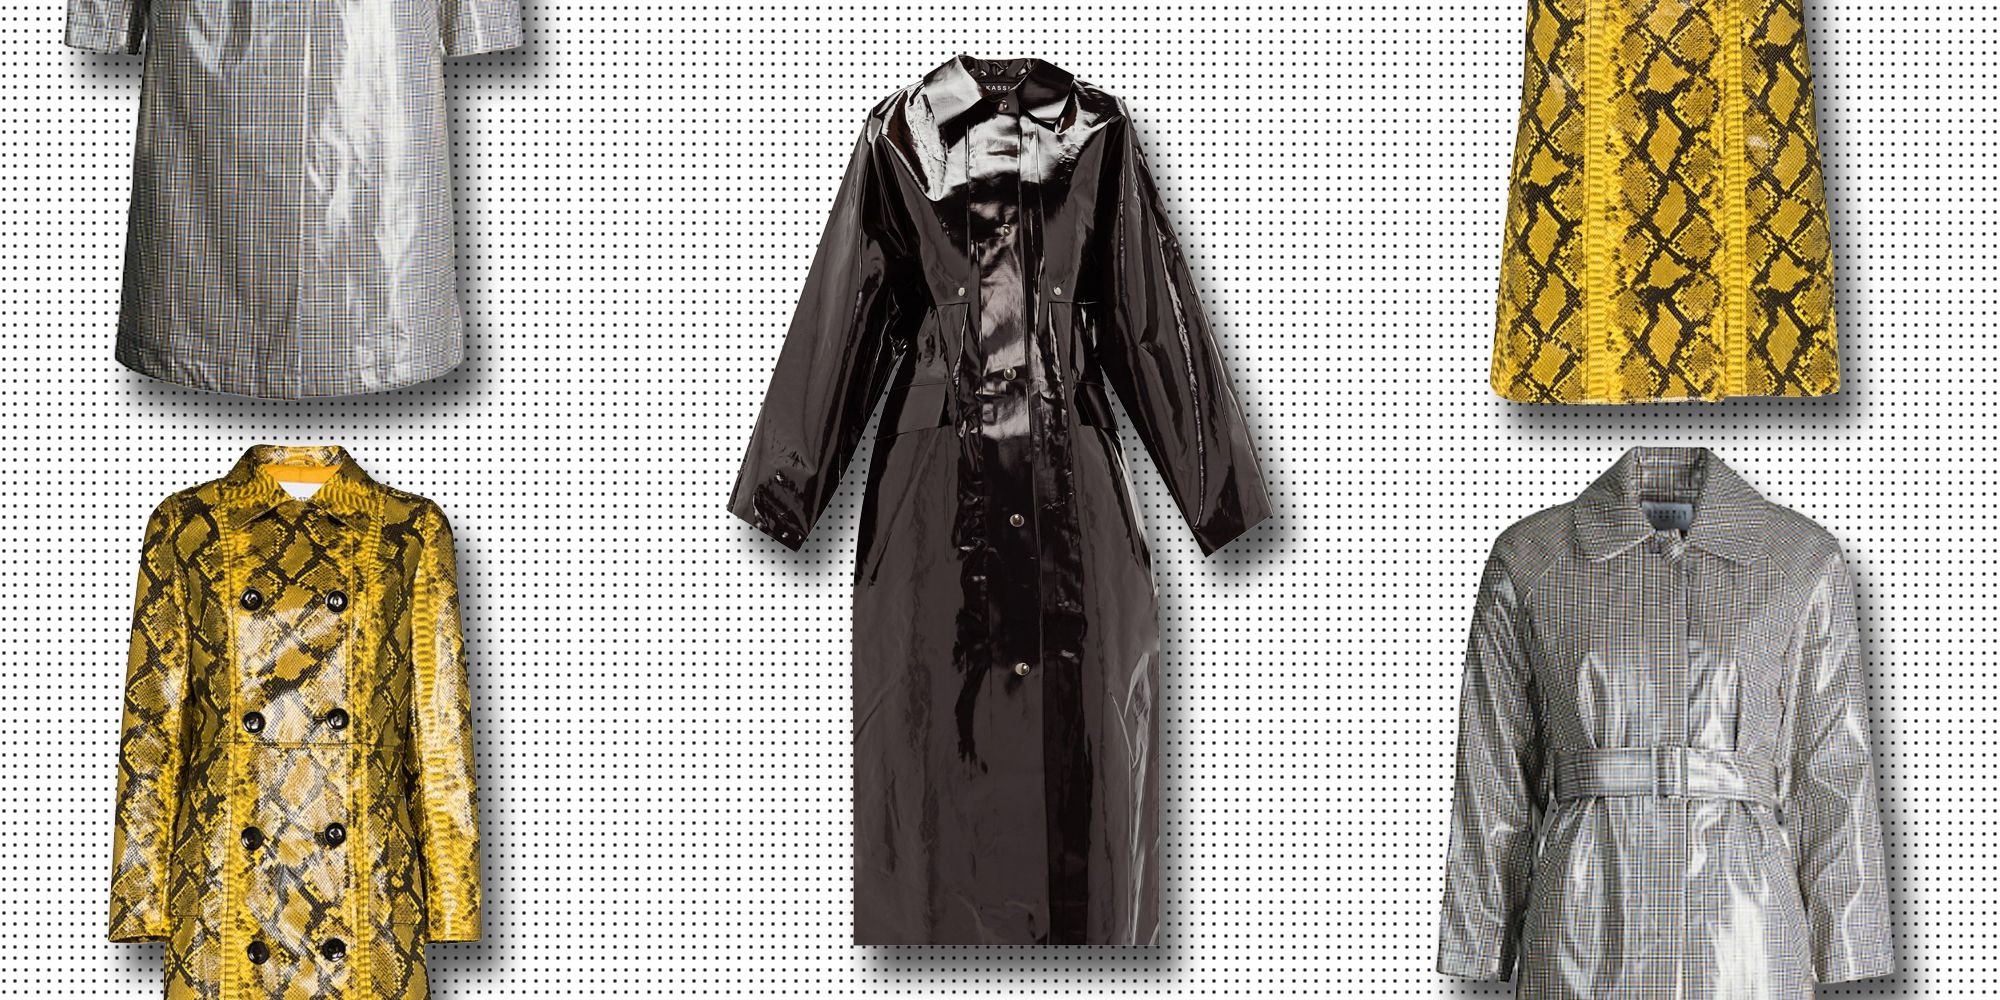 designer raincoat